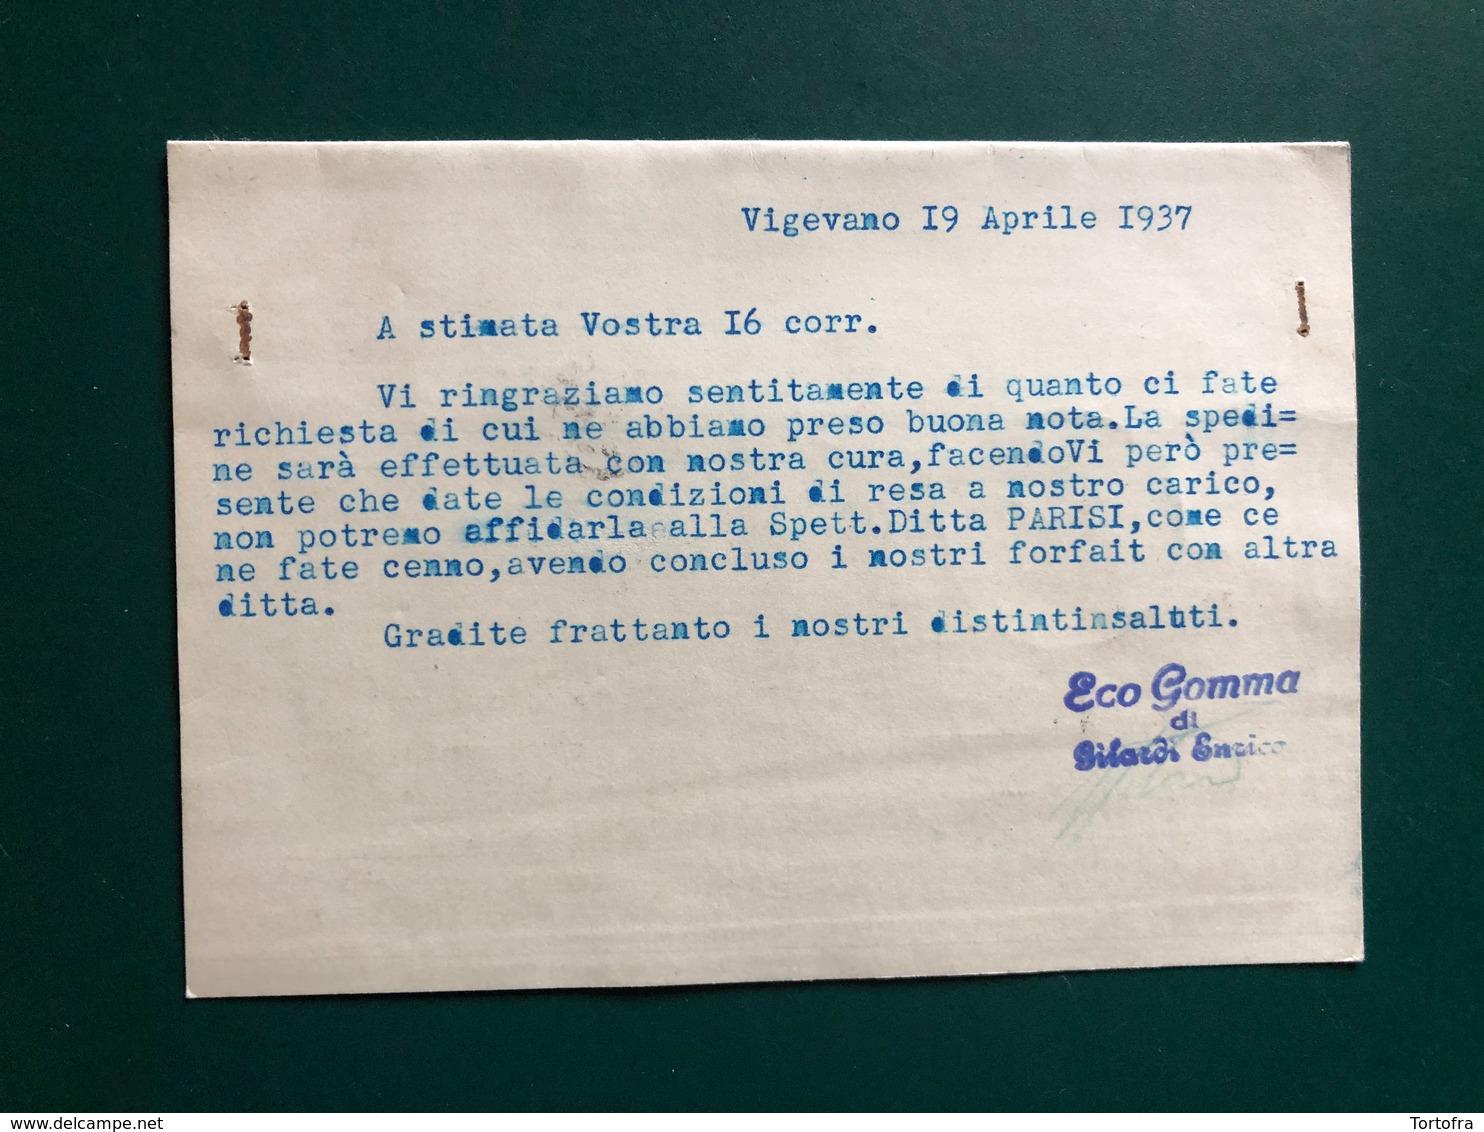 VIGEVANO (PAVIA)  GILARDI ENRICO ECO GOMMA 1937 - Vigevano